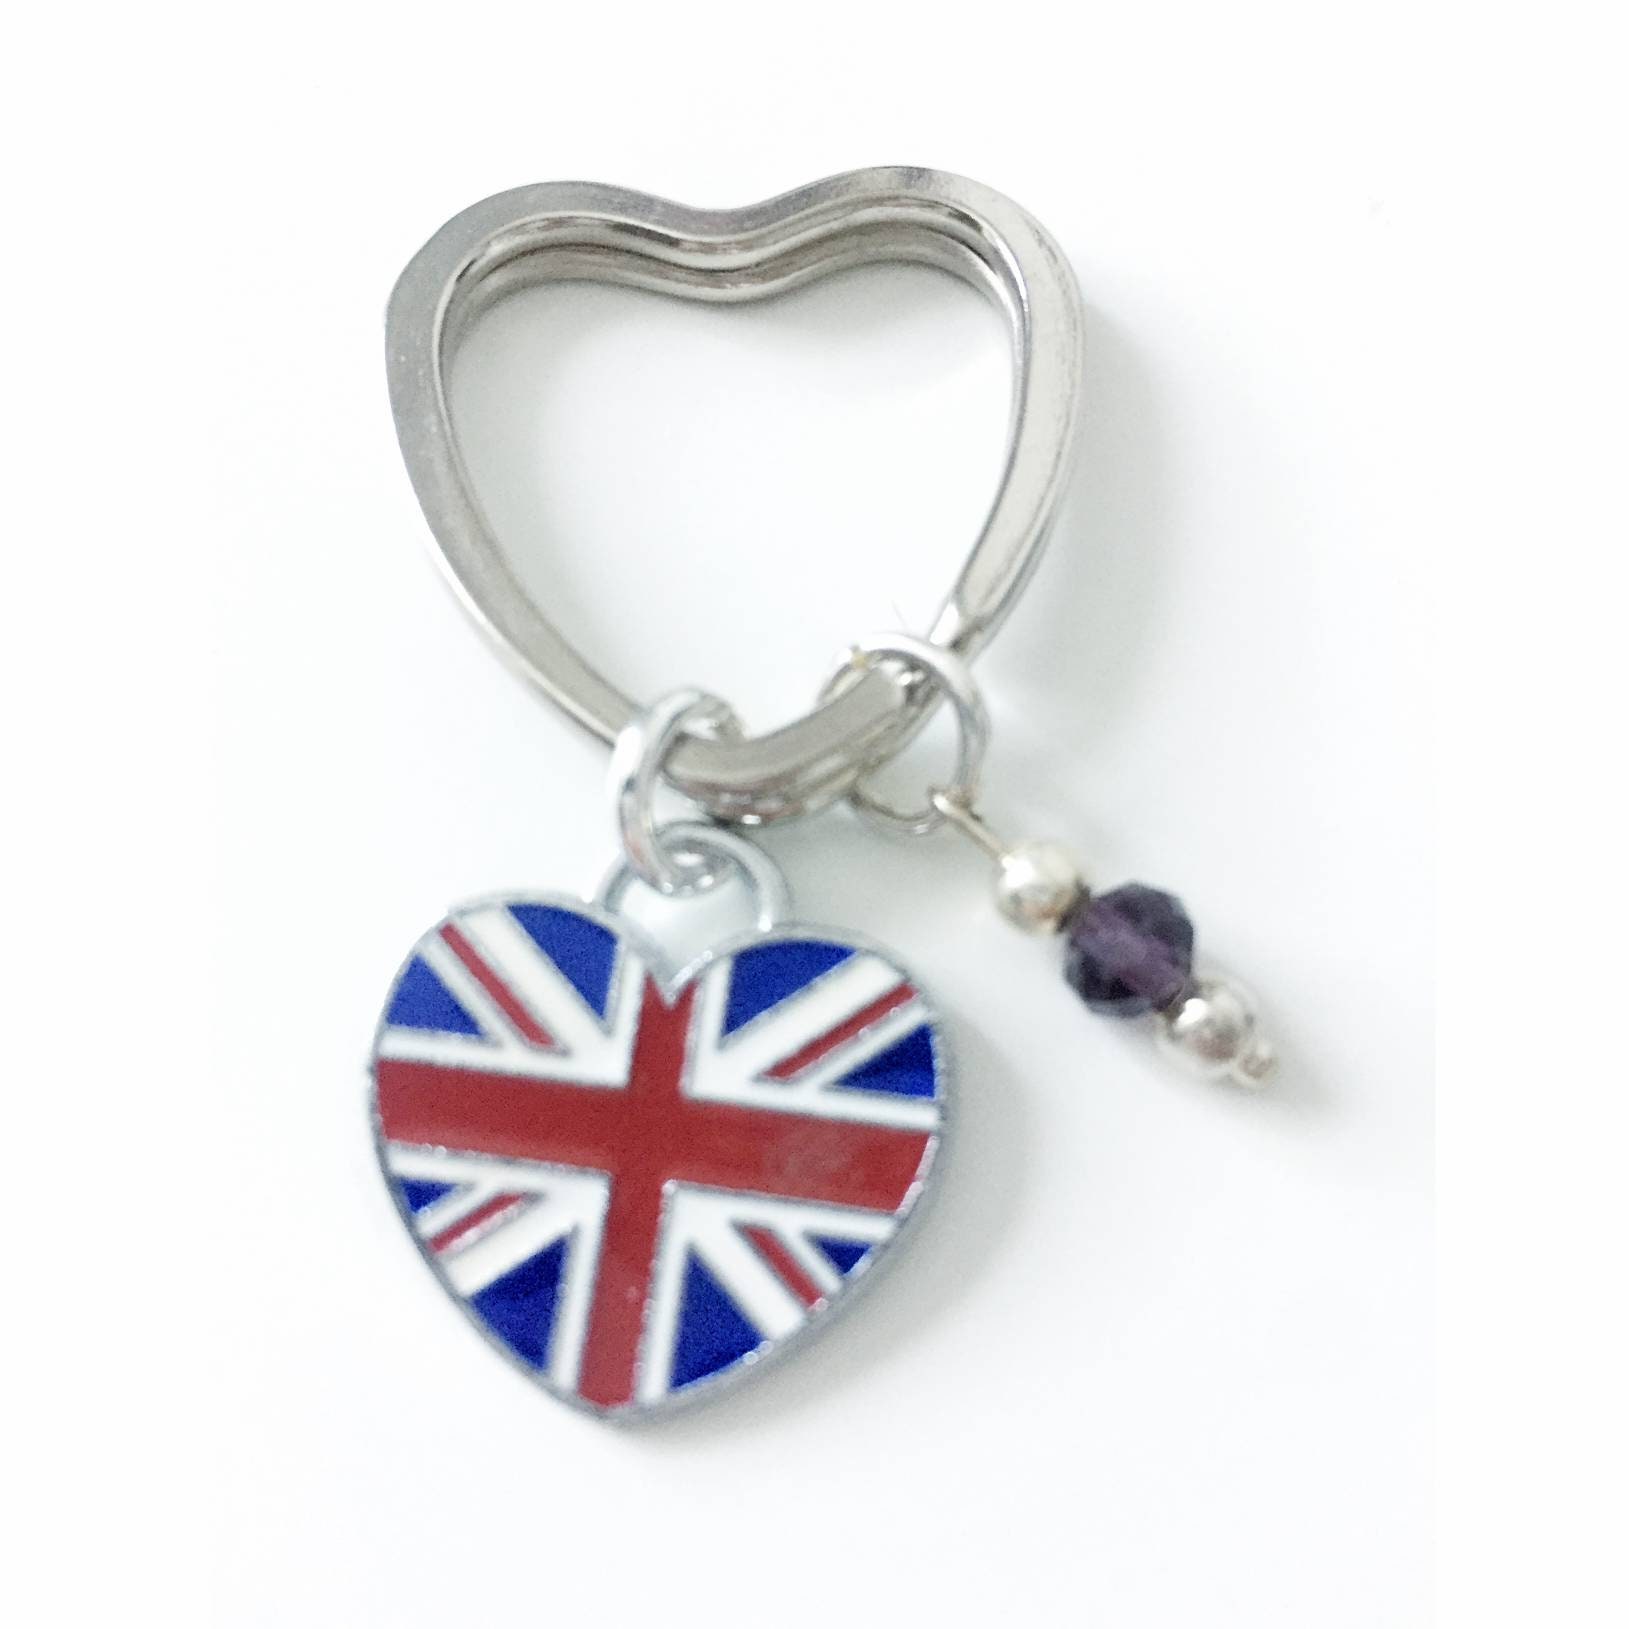 Union Jack Heart Charm keyring Personalised Gifts British | Etsy